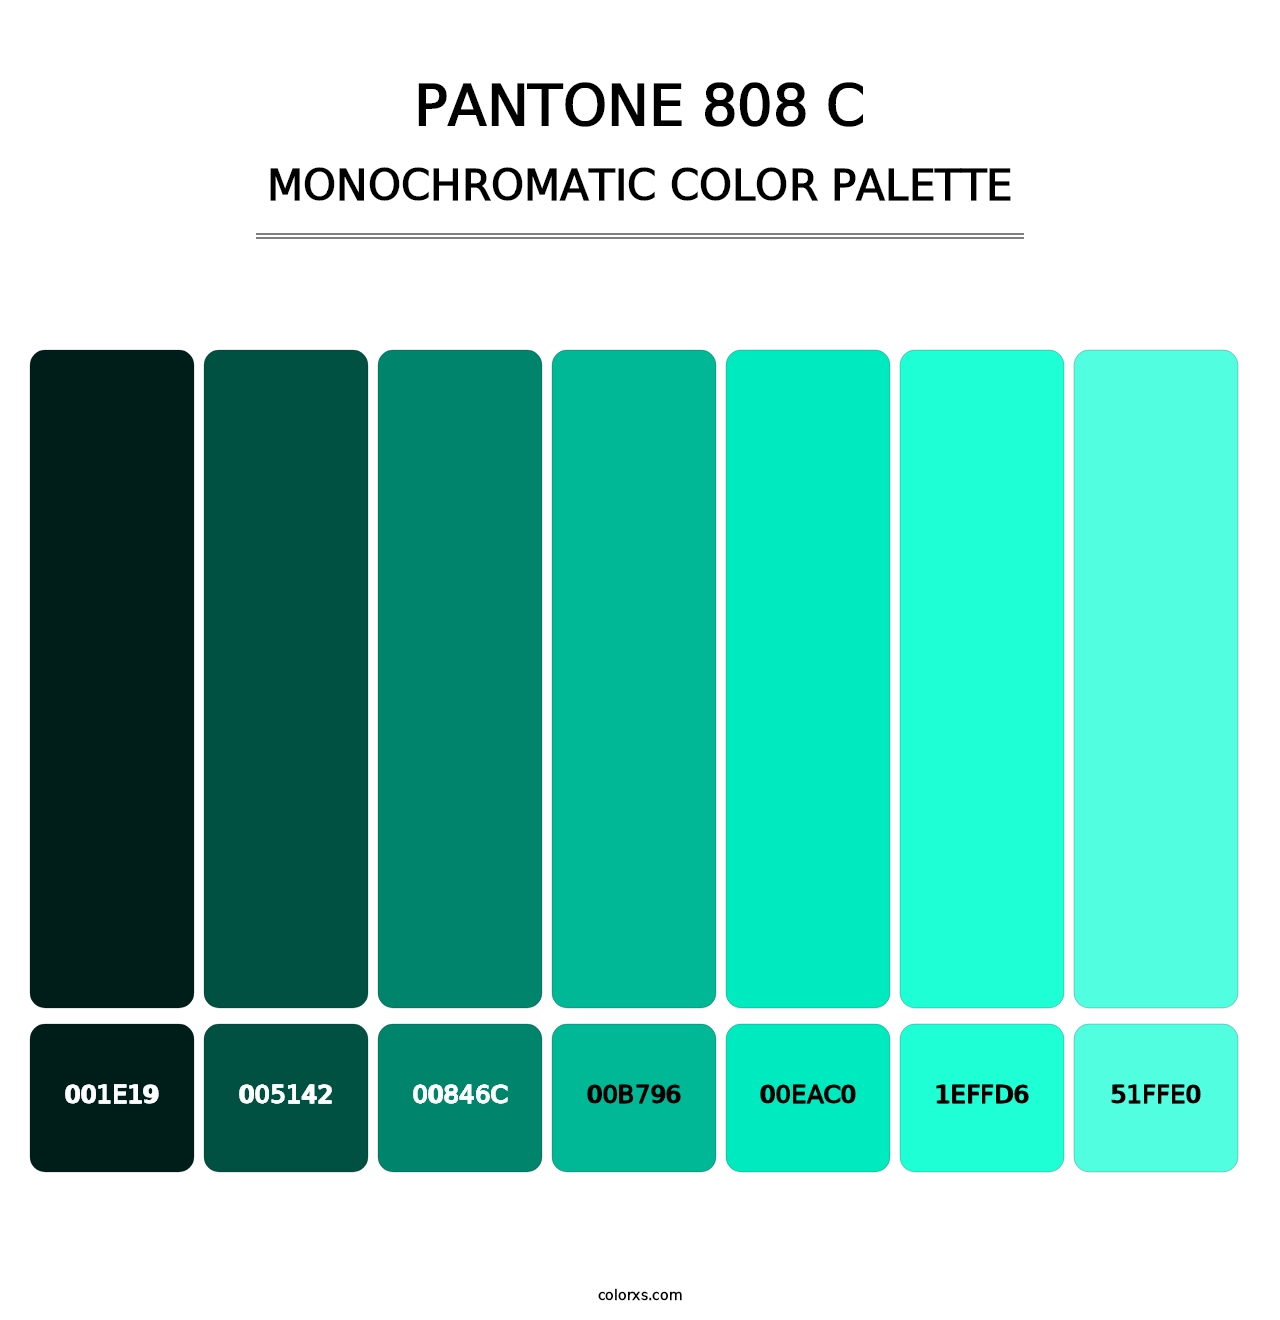 PANTONE 808 C - Monochromatic Color Palette